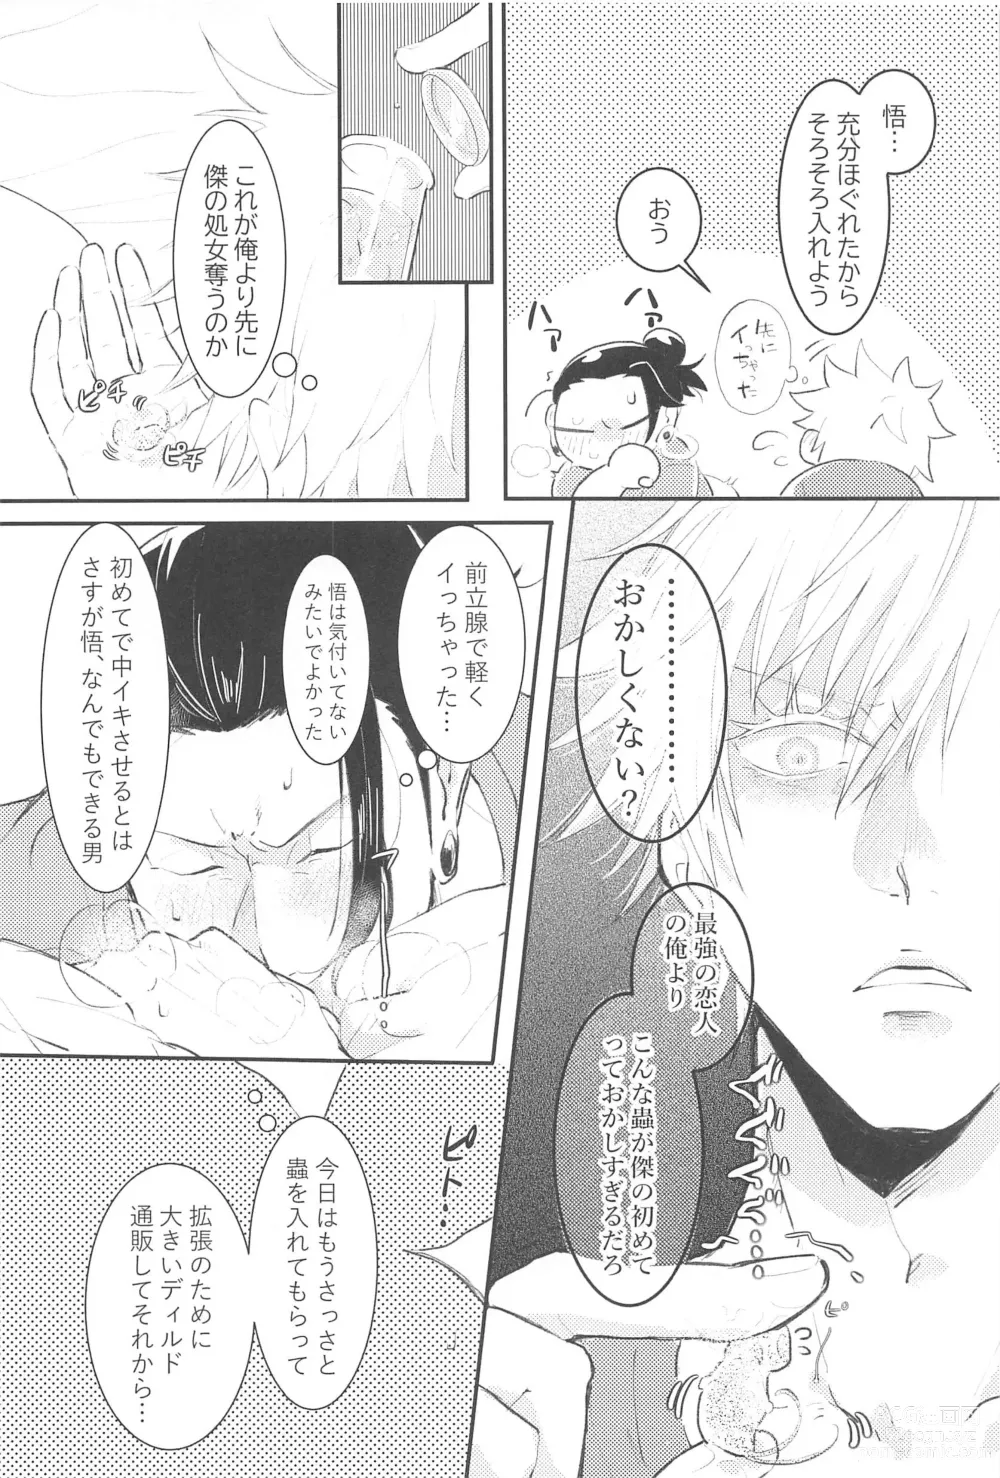 Page 13 of doujinshi Hajimete wa Ore no Mono